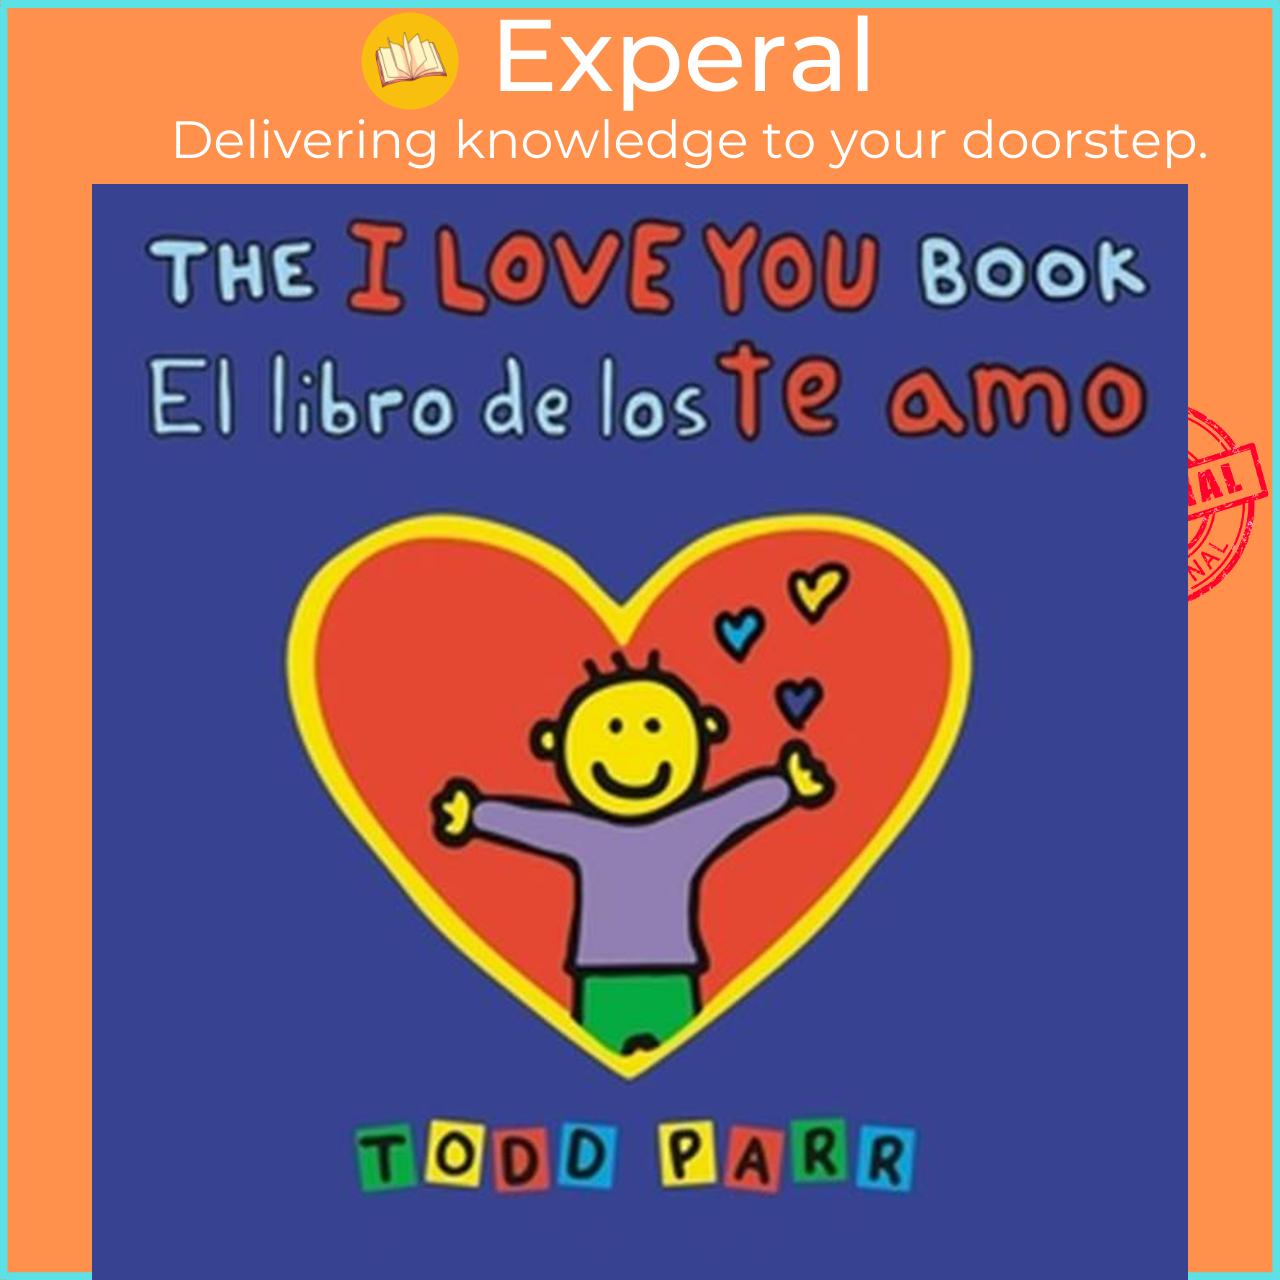 Sách - The I Love You Book / El libro de los te amo by Todd Parr (UK edition, paperback)